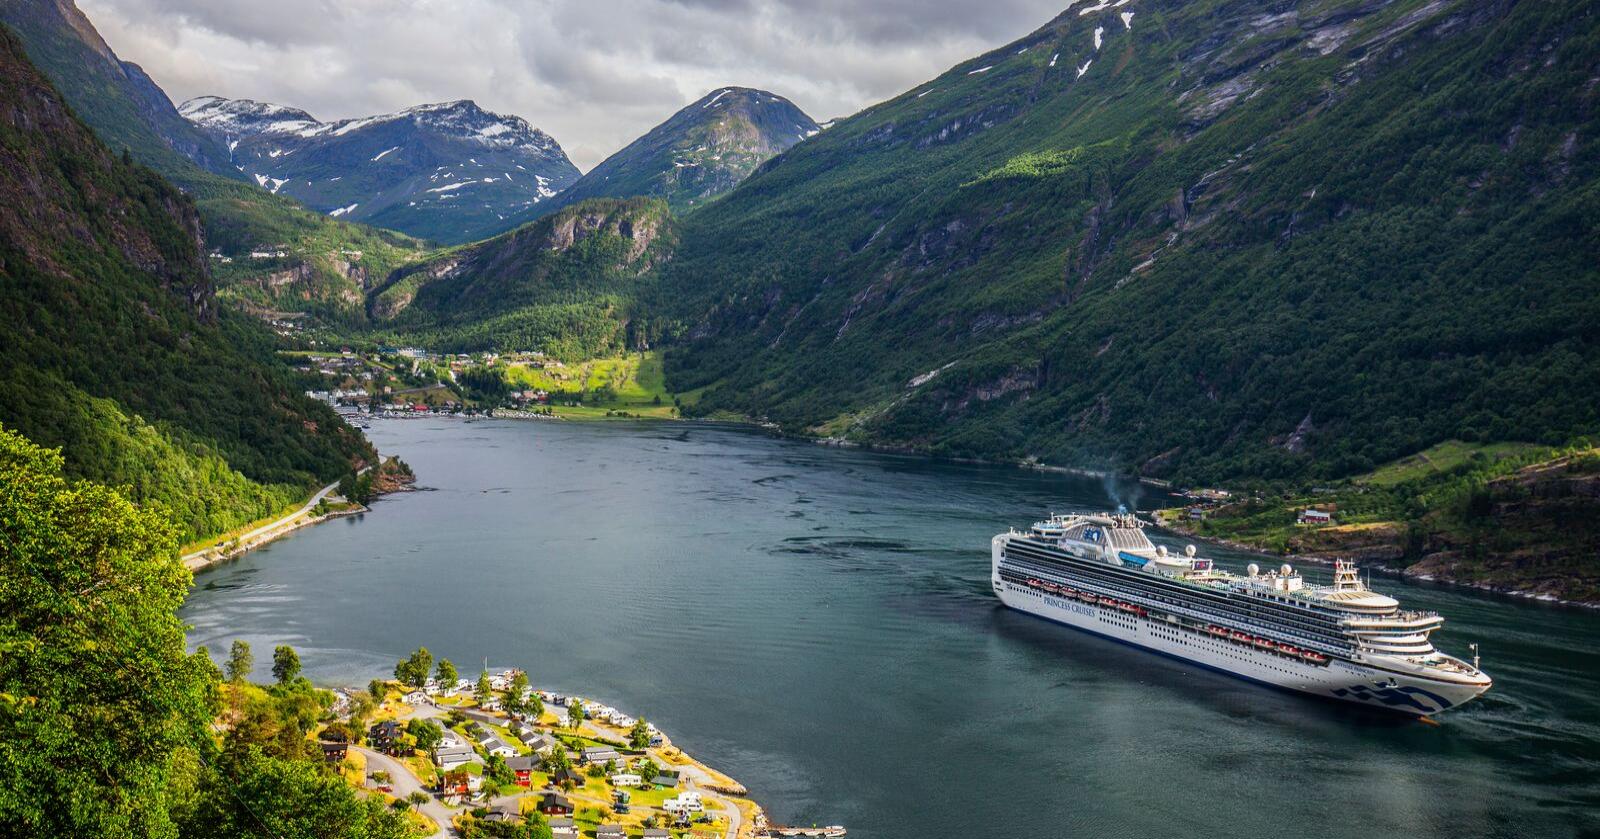 Det er fremdeles mange ledige sommerjobber innen norsk reiselivsbransje, opplyser NHO Reiseliv. Foto: Halvard Alvik, NTB